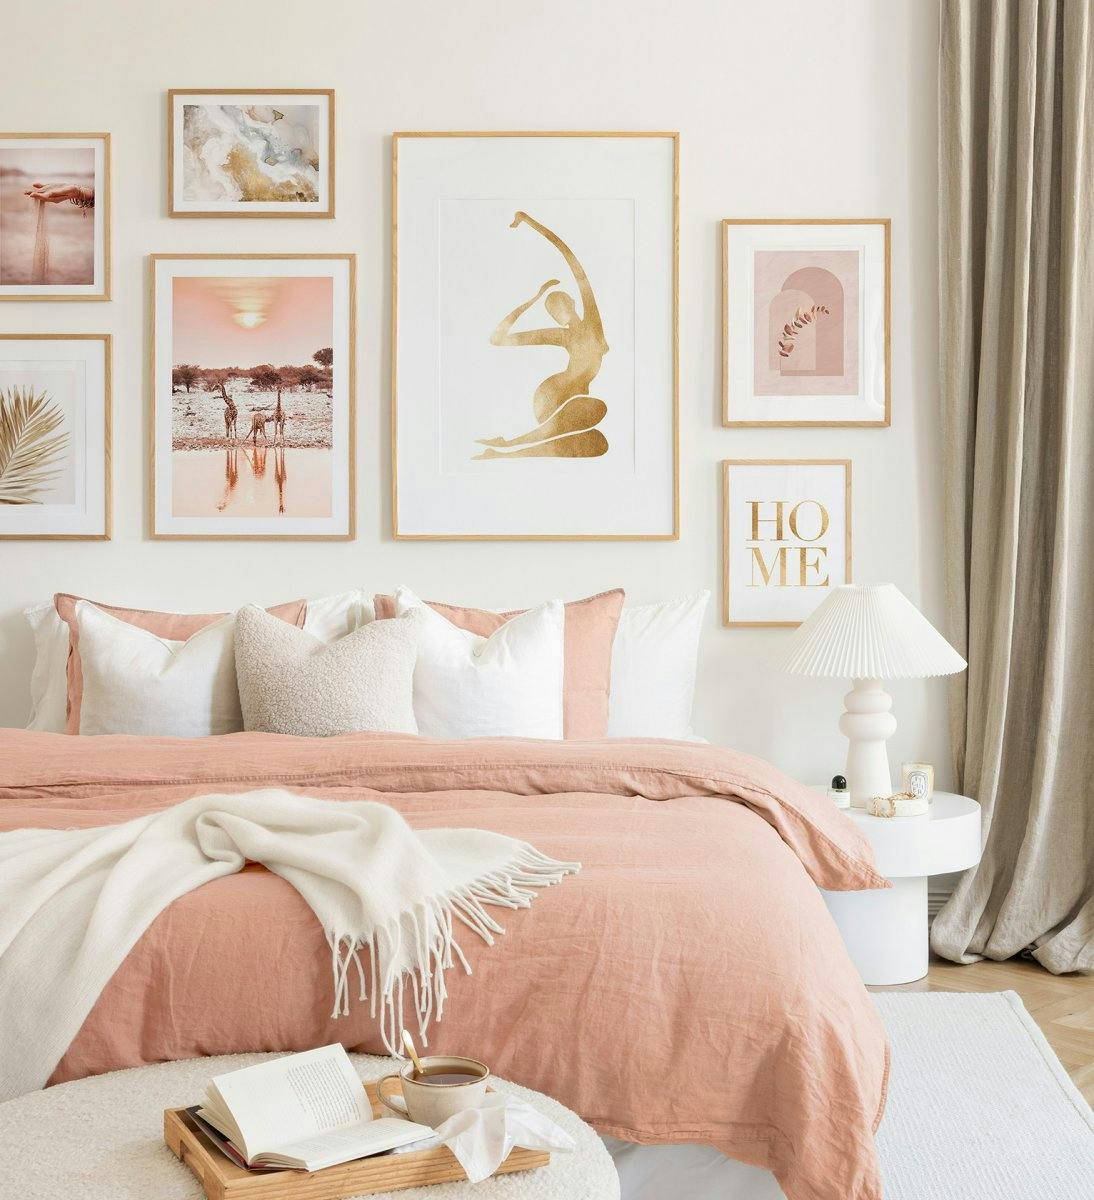 Una galería de pared con suaves tonos rosa y beis en marcos de roble crea un ambiente armonioso en tu dormitorio.